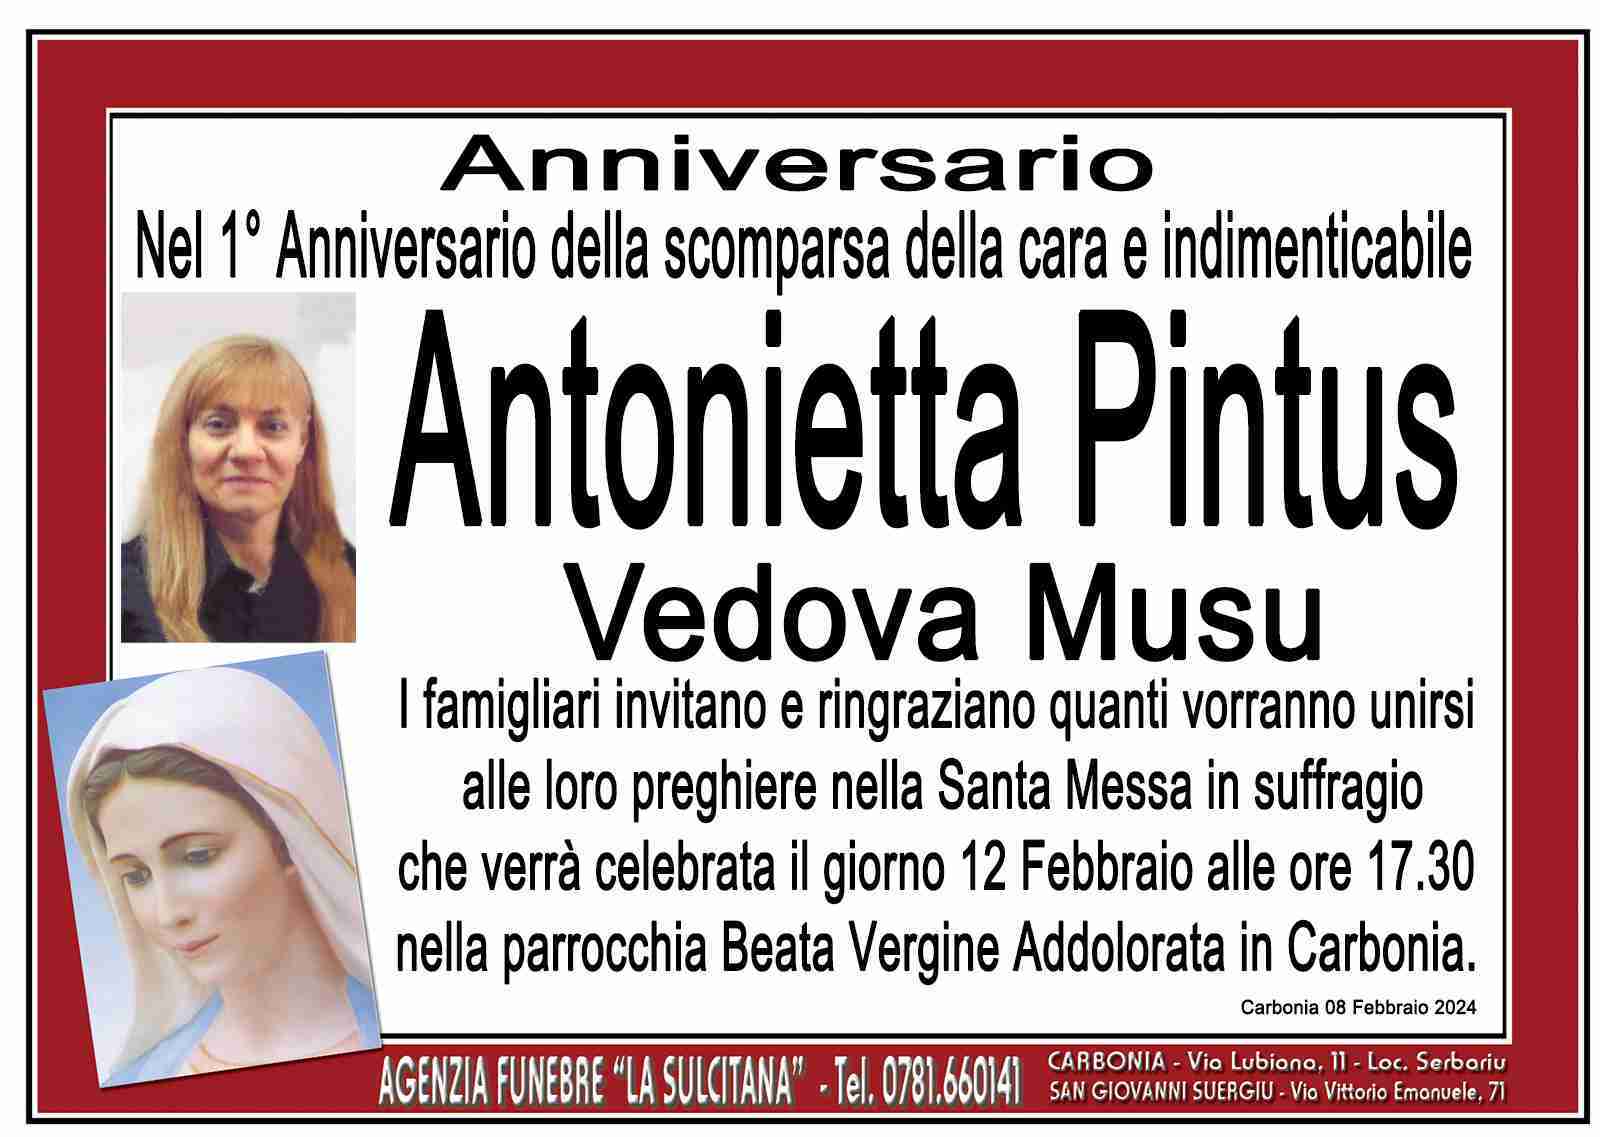 Antonietta Pintus